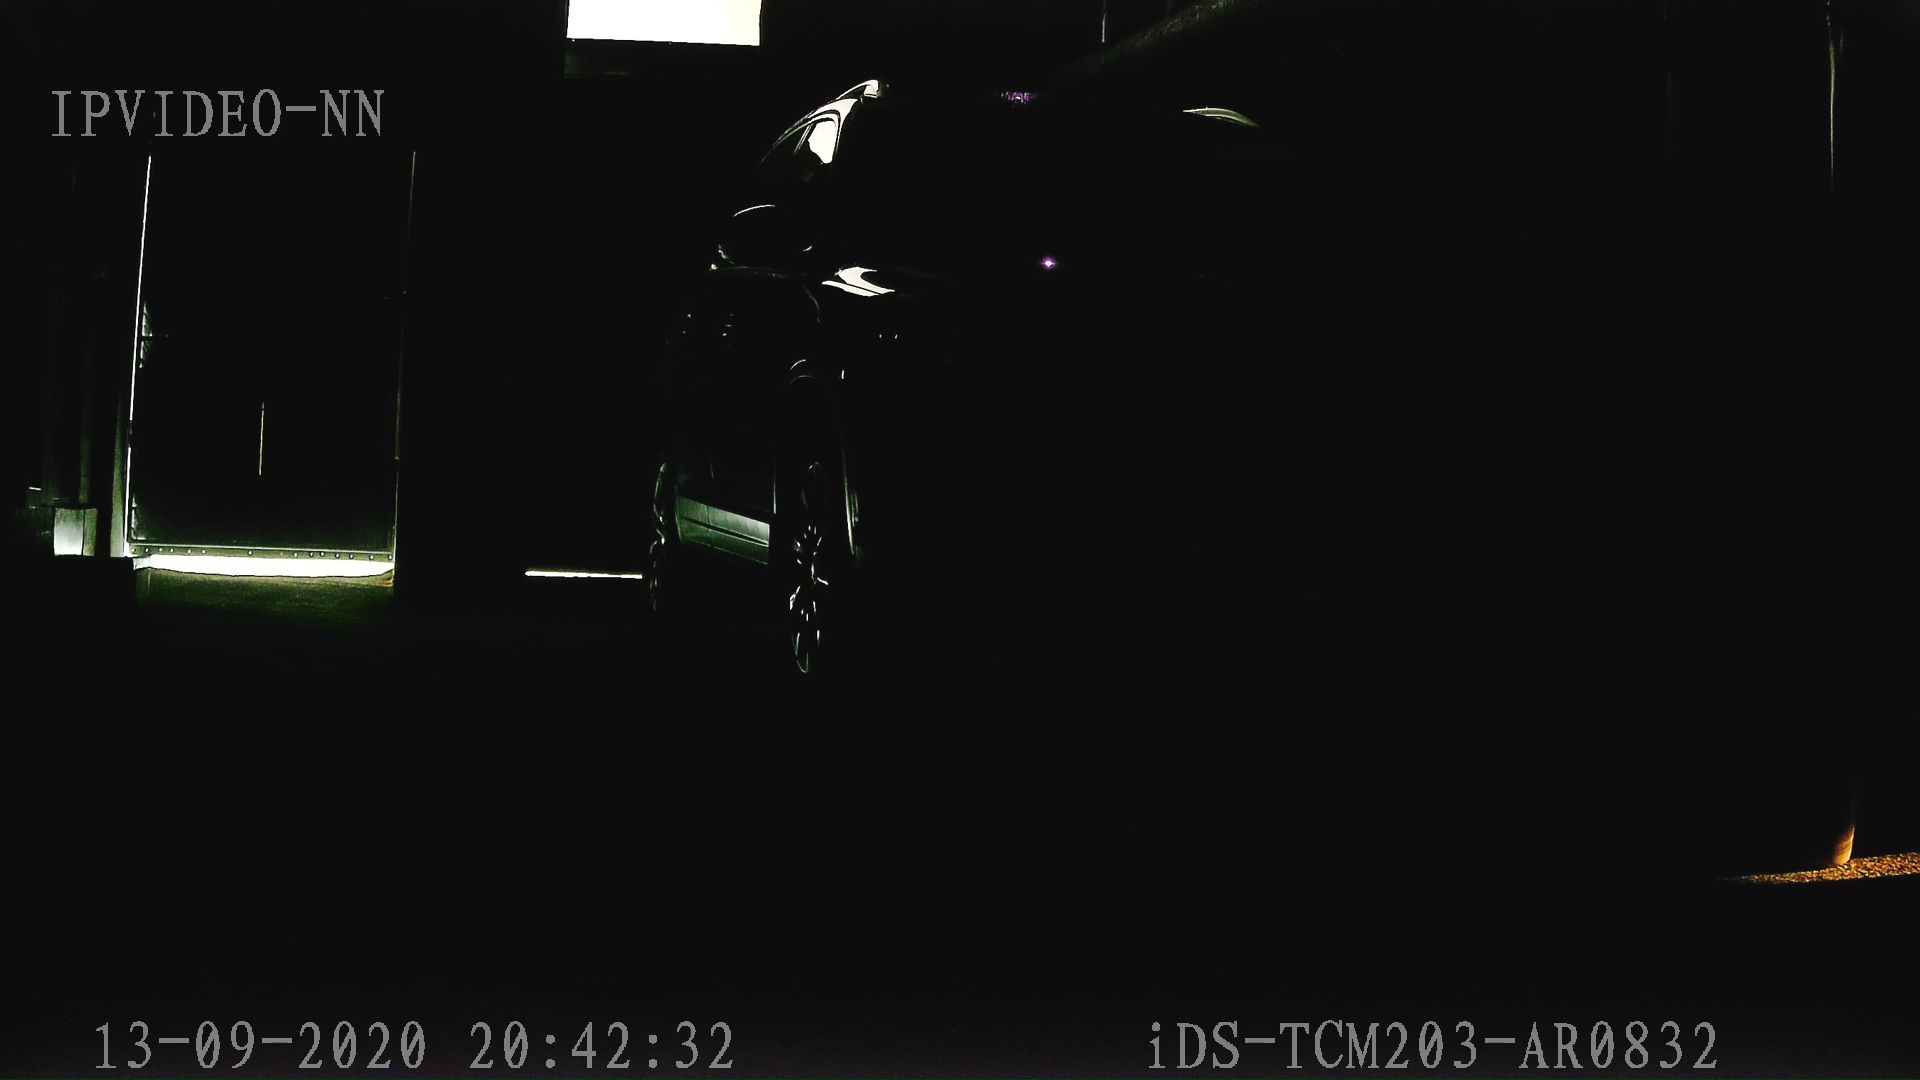 съёмка в полной темноте при отключенной ИК HIKVISION iDS-TCM203-AR0832 (850)